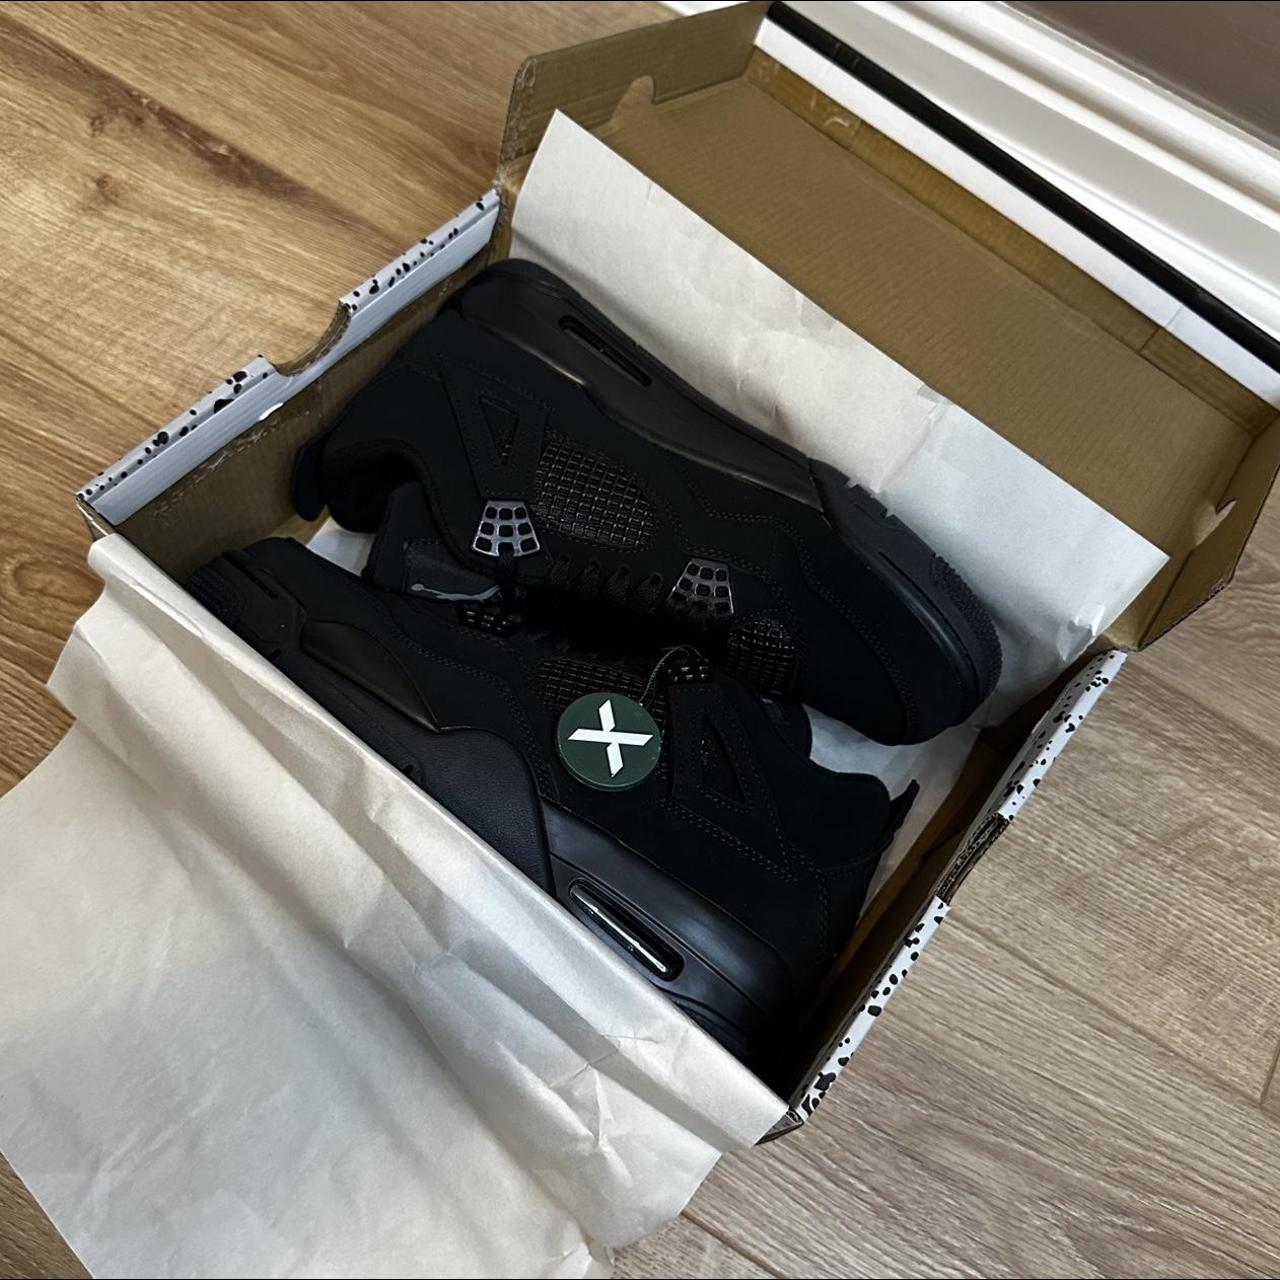 Air Jordan 4 'Black Cat' -no original box - used- - Depop